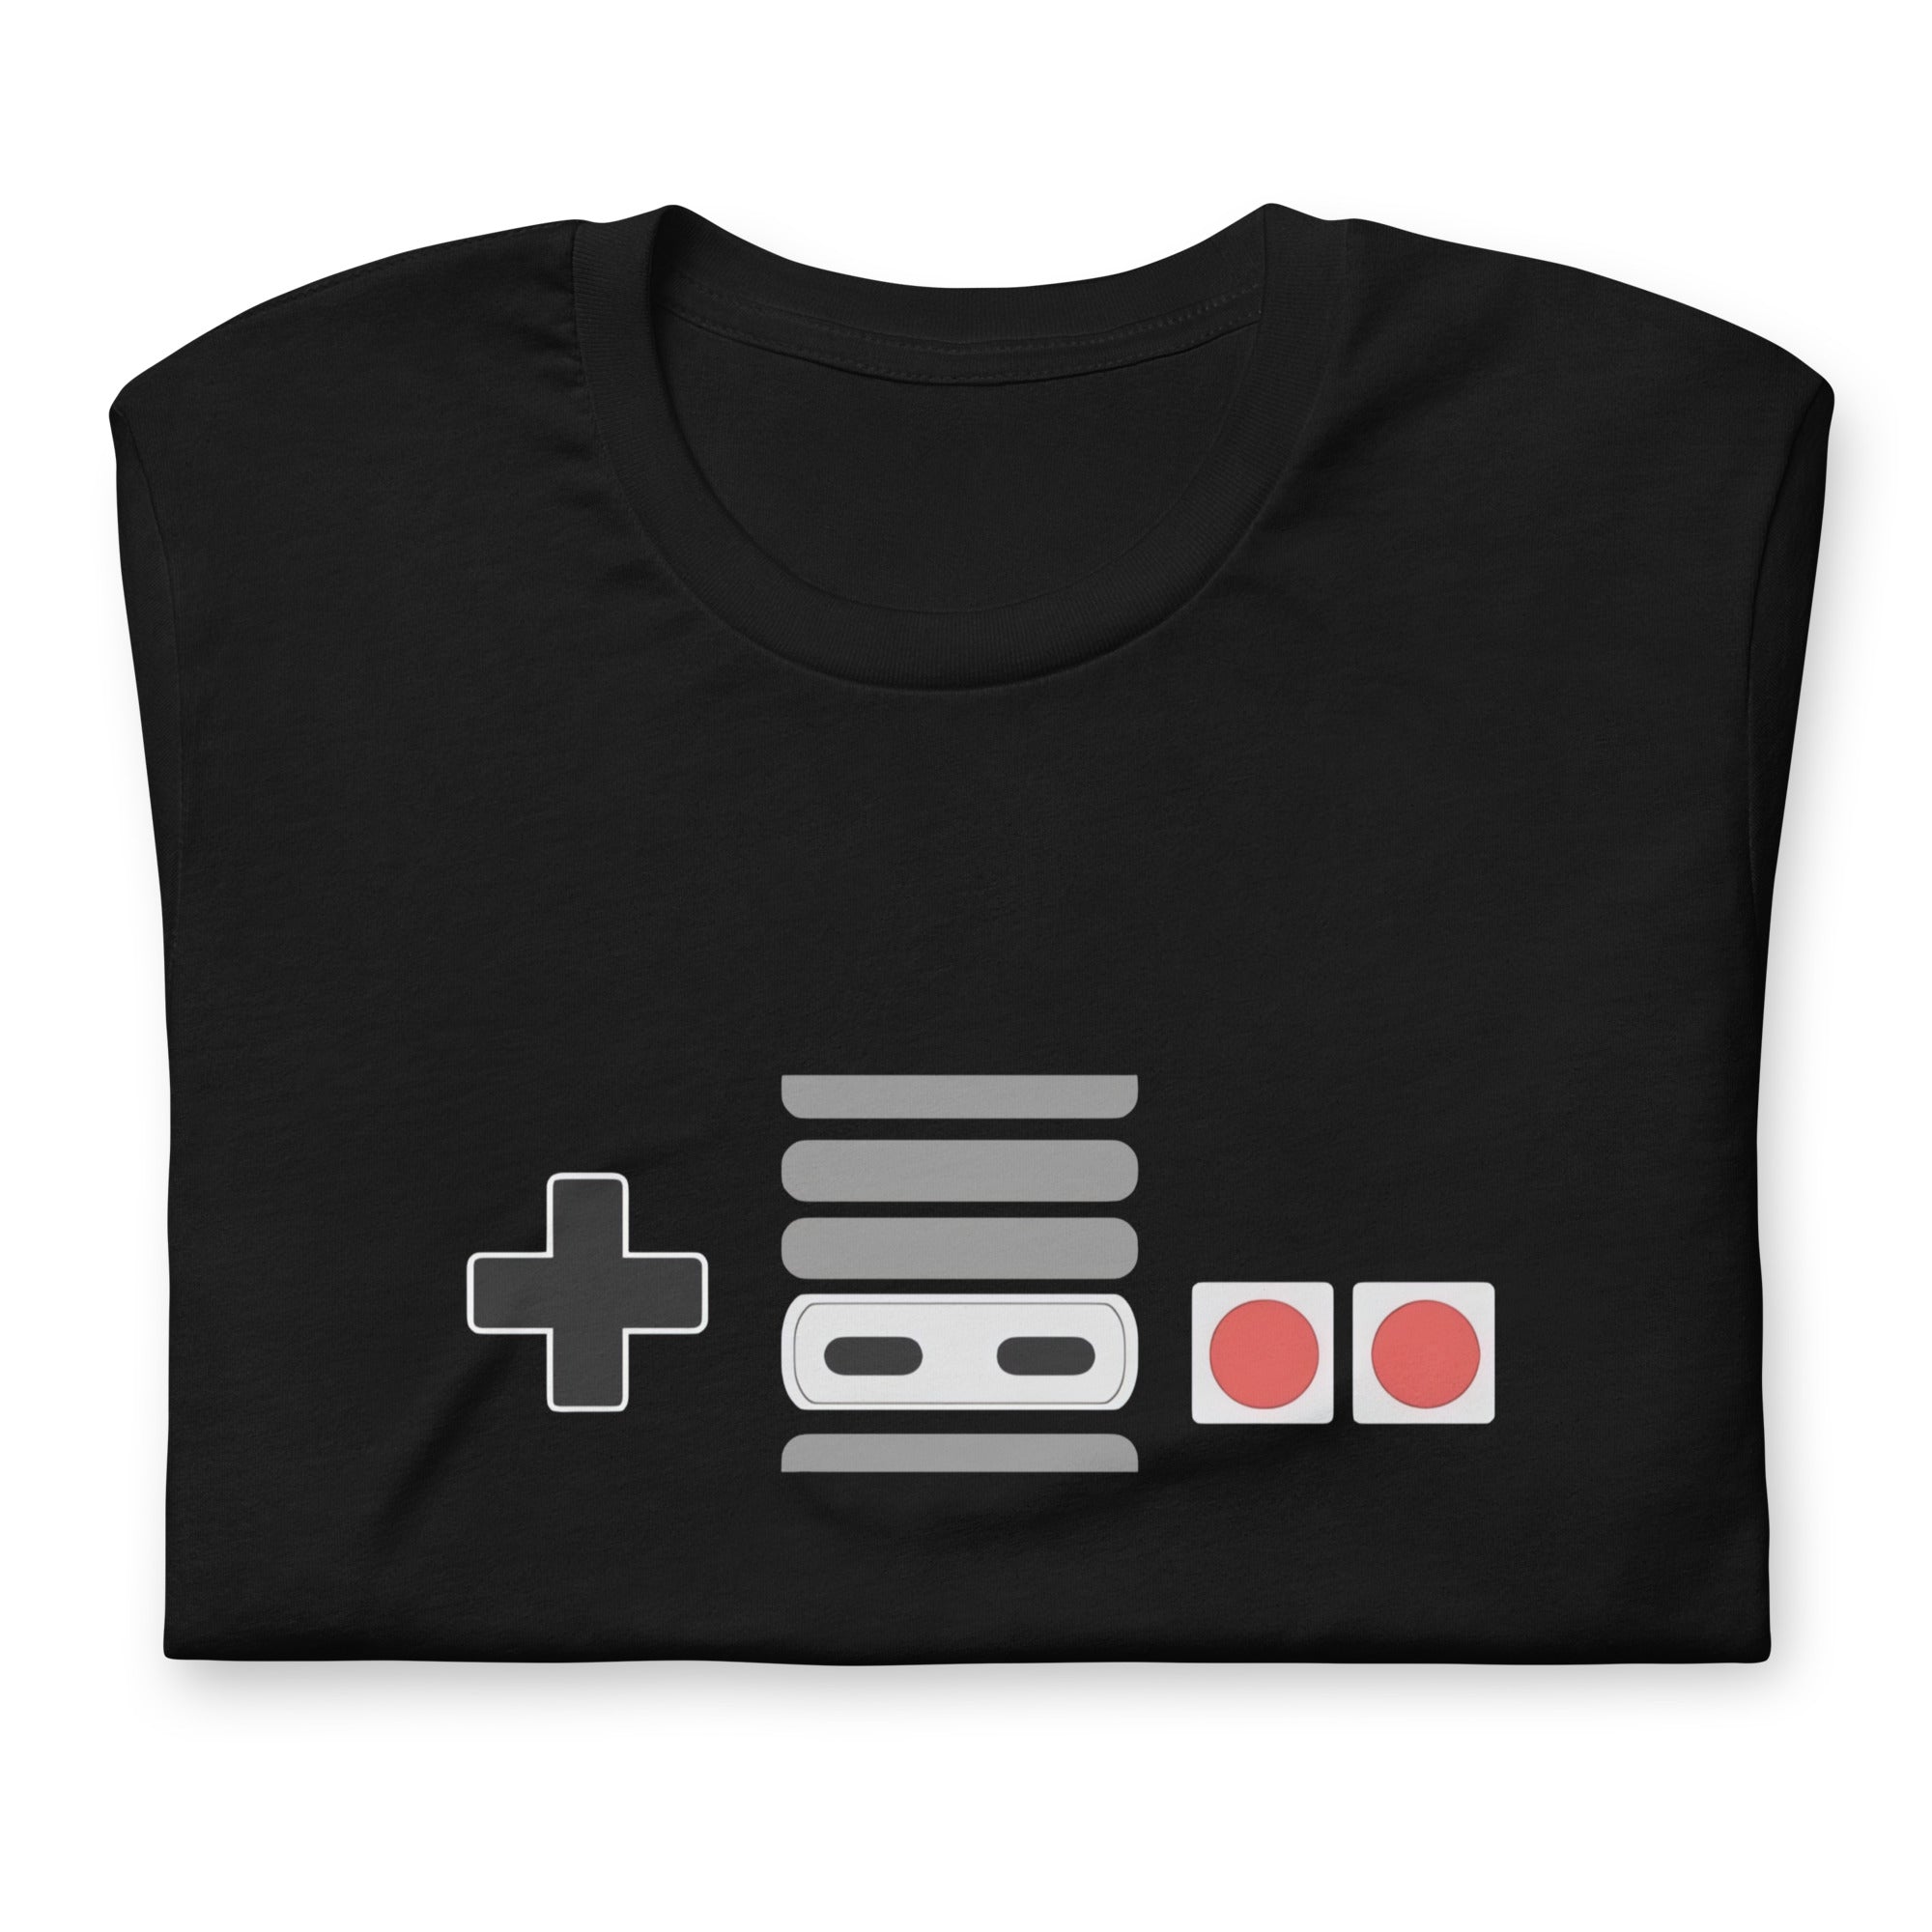 ¡Compra el mejor merchandising en Superstar! Encuentra diseños únicos y de alta calidad, Playera NES Control